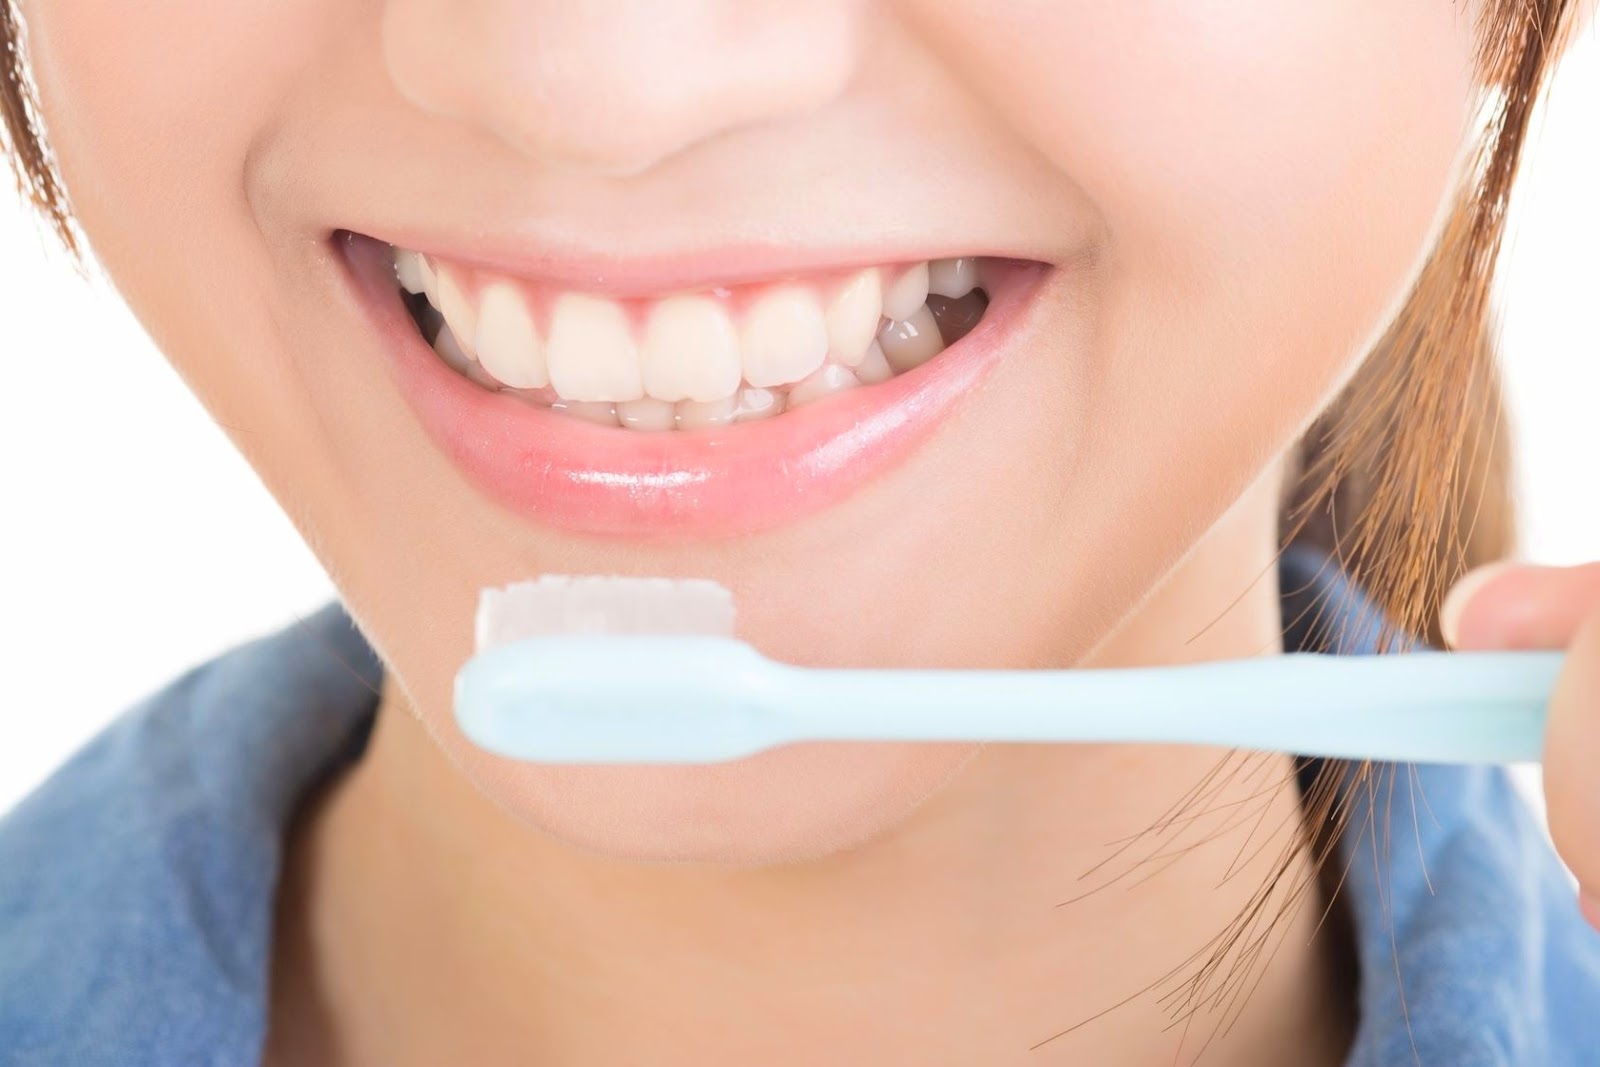 Inilah 10 Kesalahan Yang Sering Dilakukan Saat Menyikat Gigi